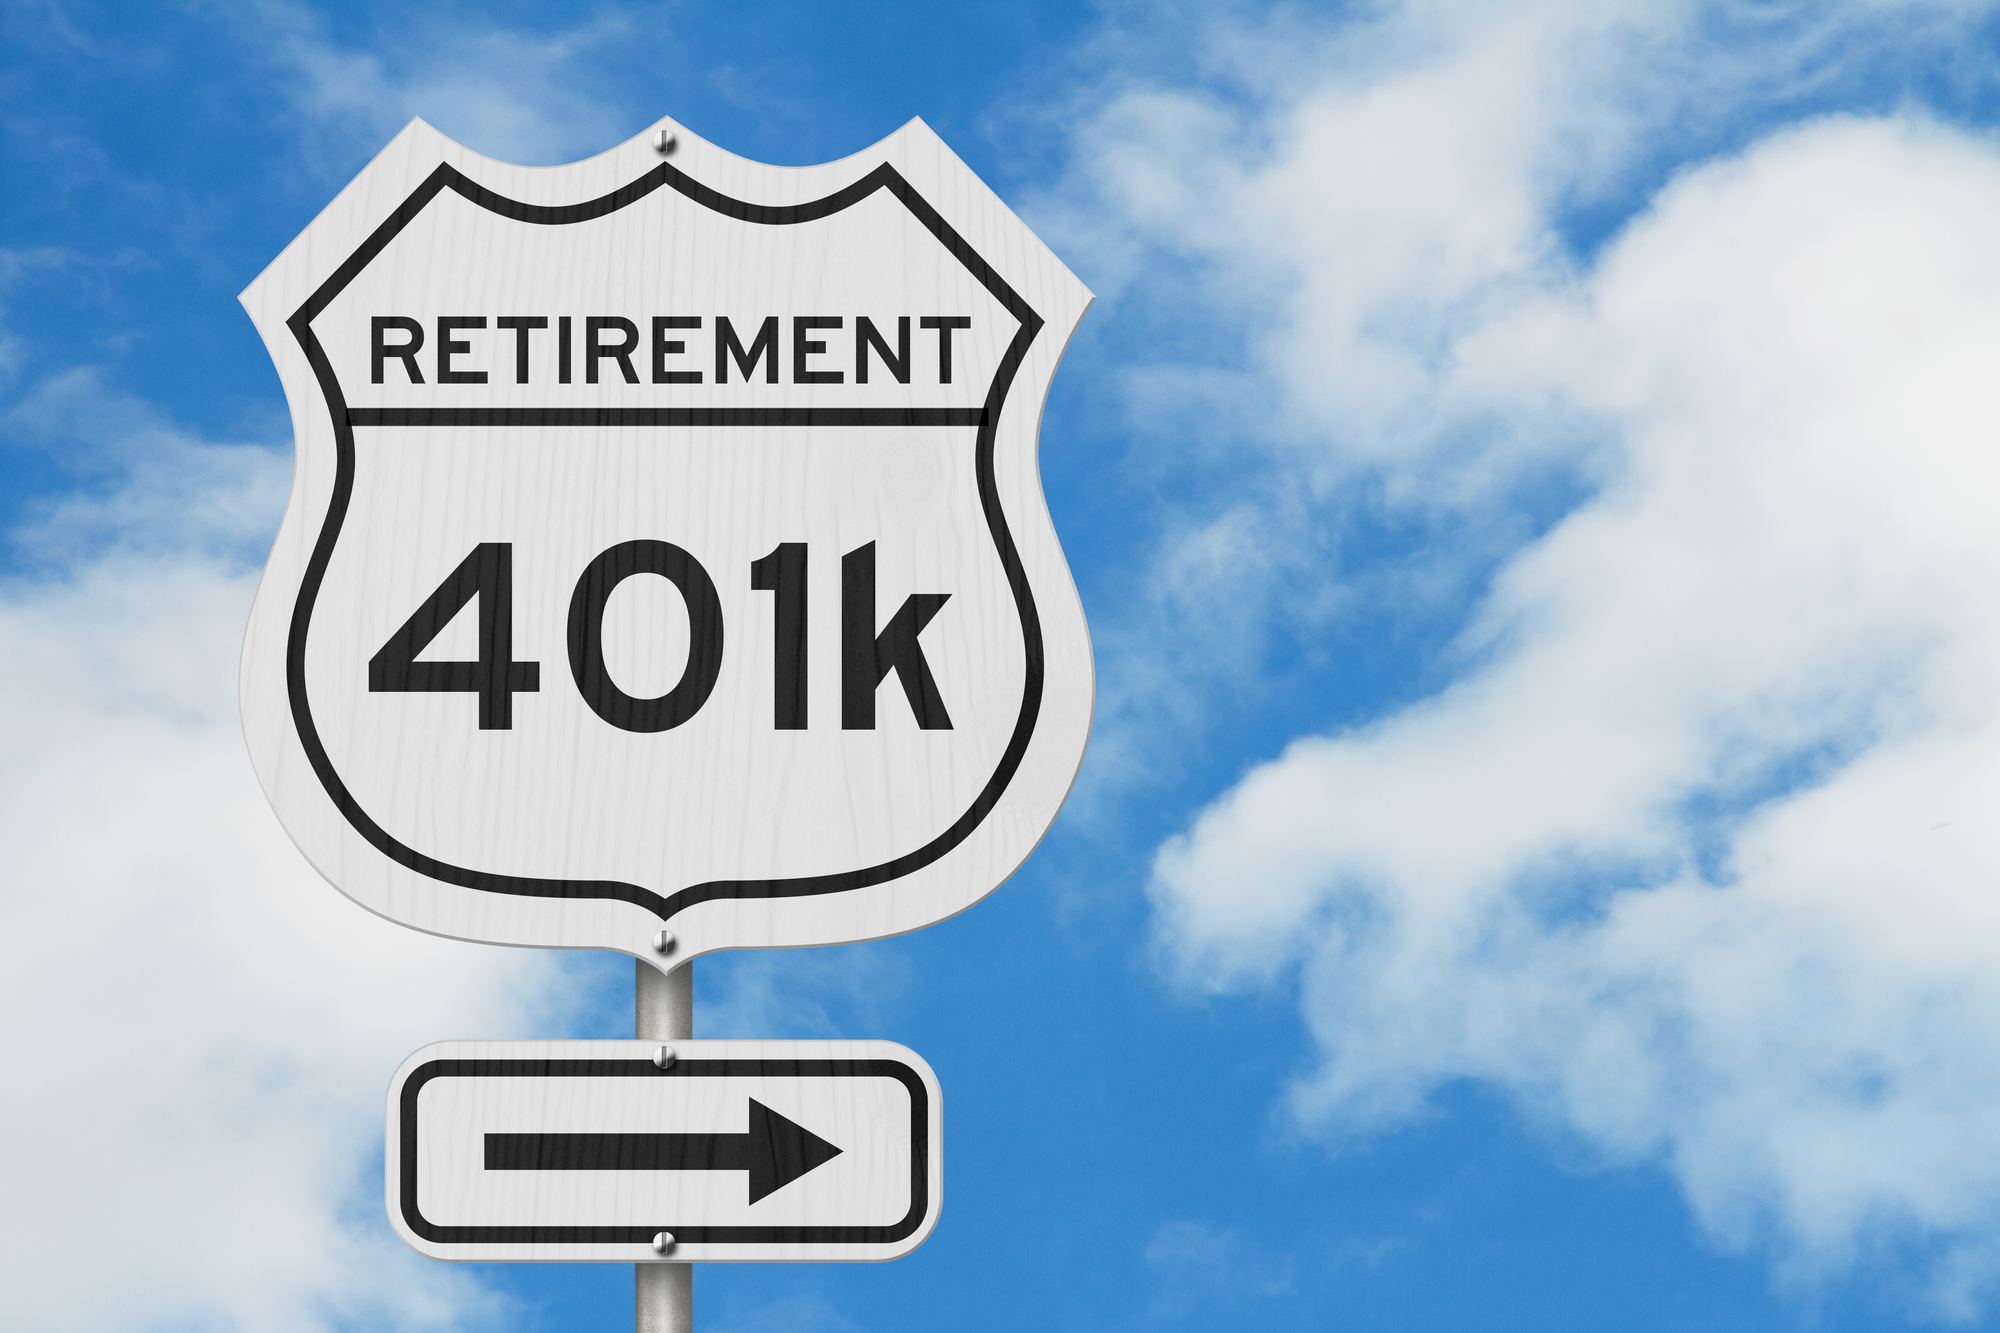 Você sabe o que é o 401k? O mais popular plano de previdência americano